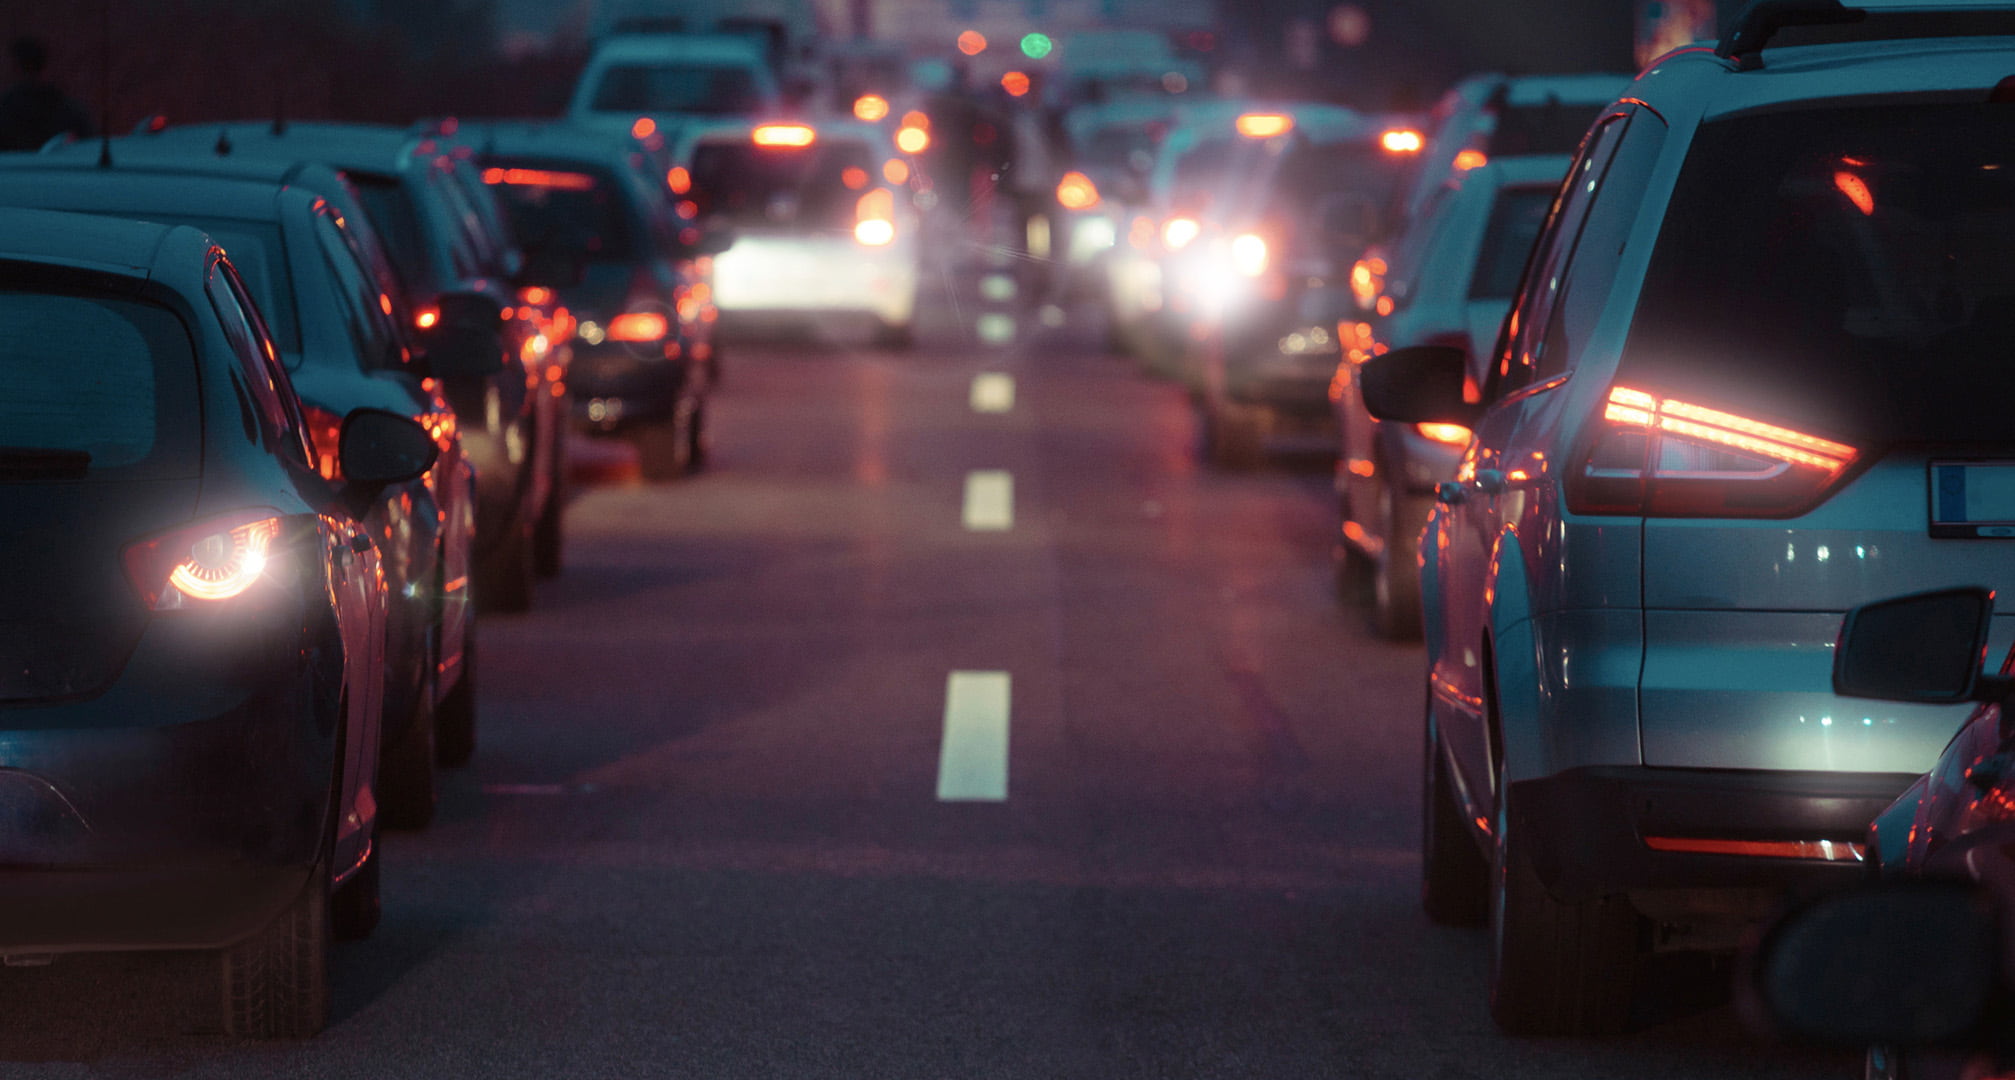 Haloer af lys omkring bilens baglygter om natten forårsaget af bygningsfejl (venstre). Klare bilbaglygter om natten set med normalt øje (højre)